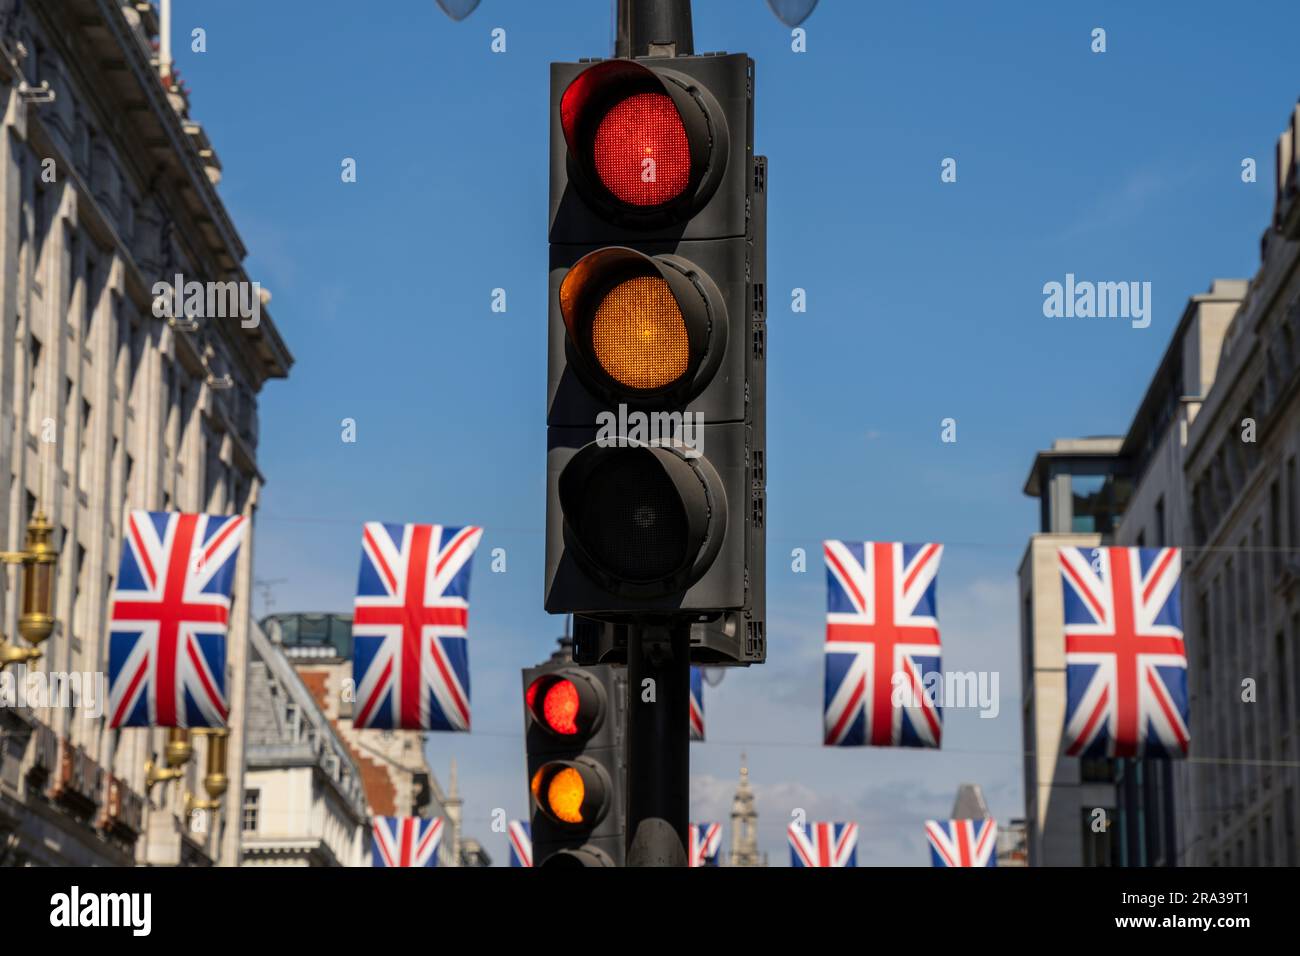 Feu stop, feu rouge et jaune sur une rue de Londres avec des drapeaux britanniques. Signaux confus, mixtes, métaphore conceptuelle des choix de vie. Banque D'Images